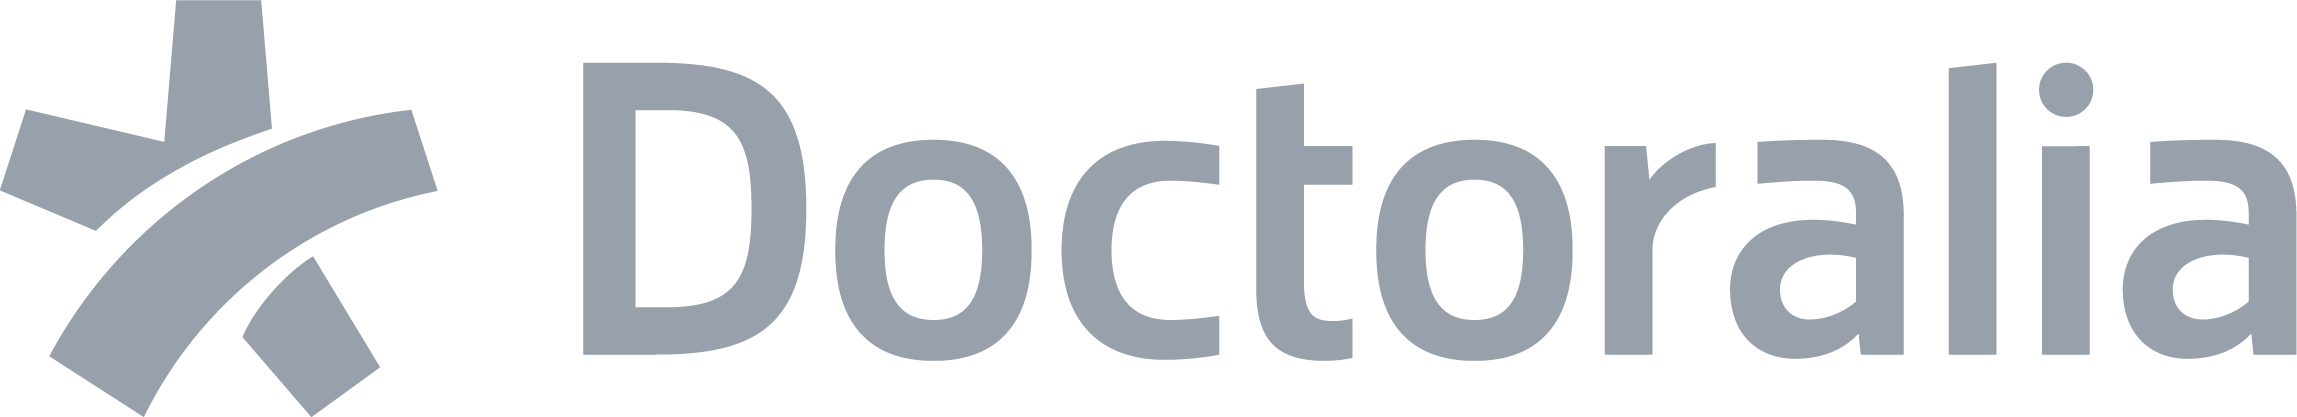 logo-doctoralia-grey